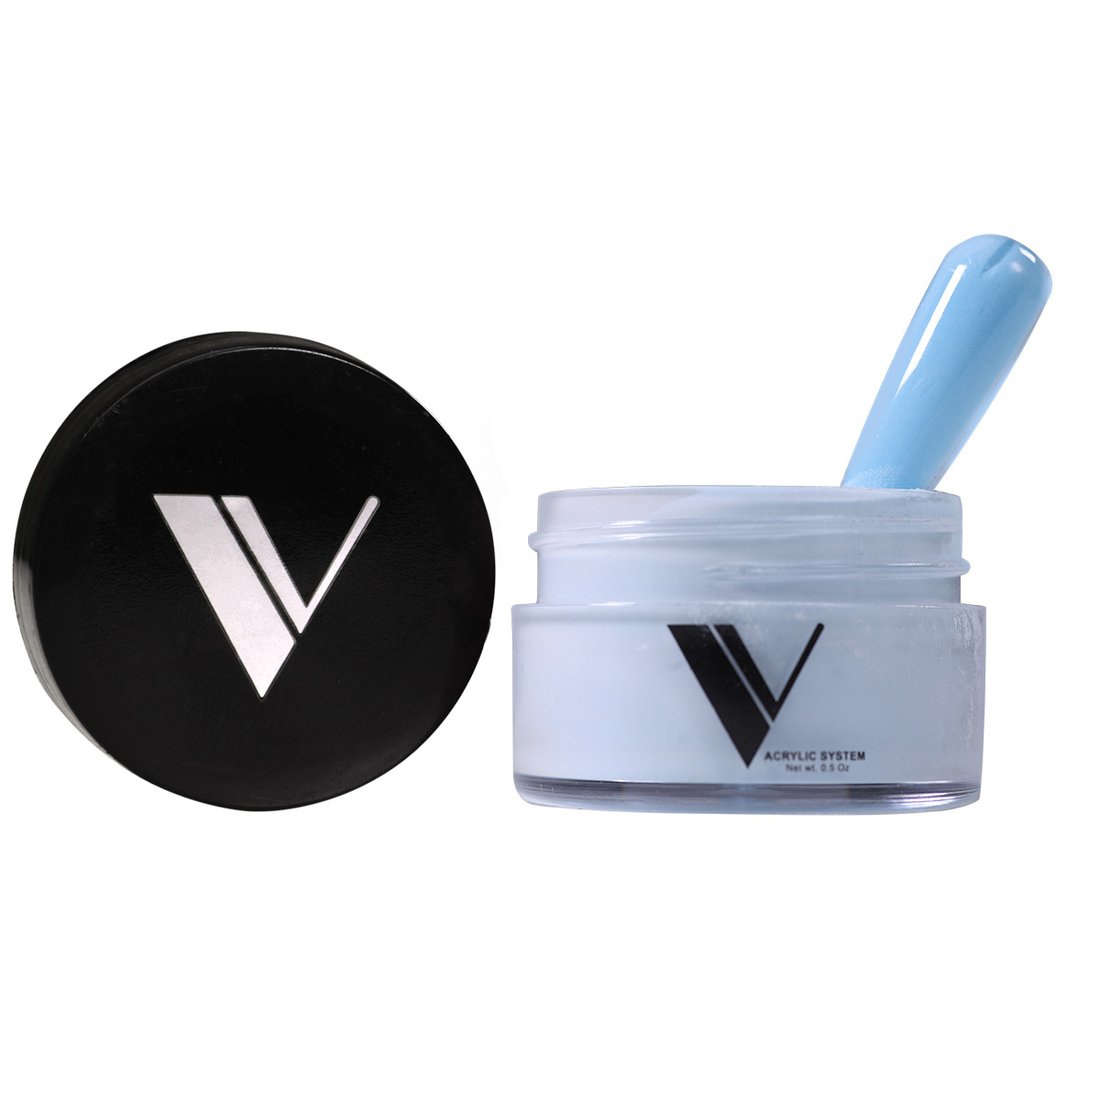 Valentino Beauty Pure - Coloured Acrylic Powder 0.5 oz - 222 Madagascar Vanilla Bean